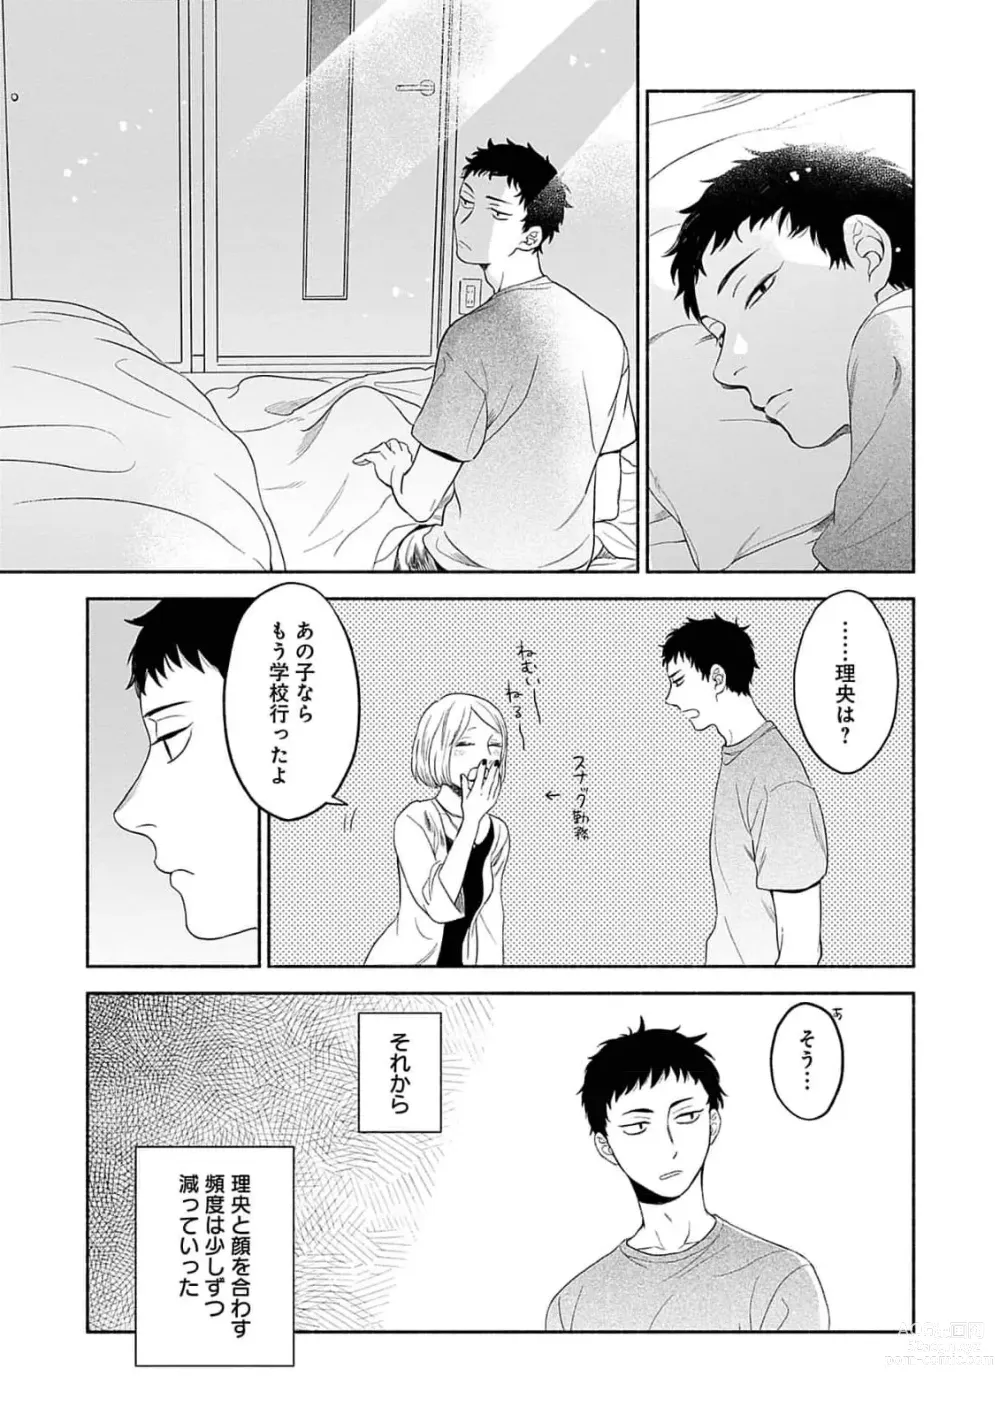 Page 17 of manga Yoru no Kyoudai